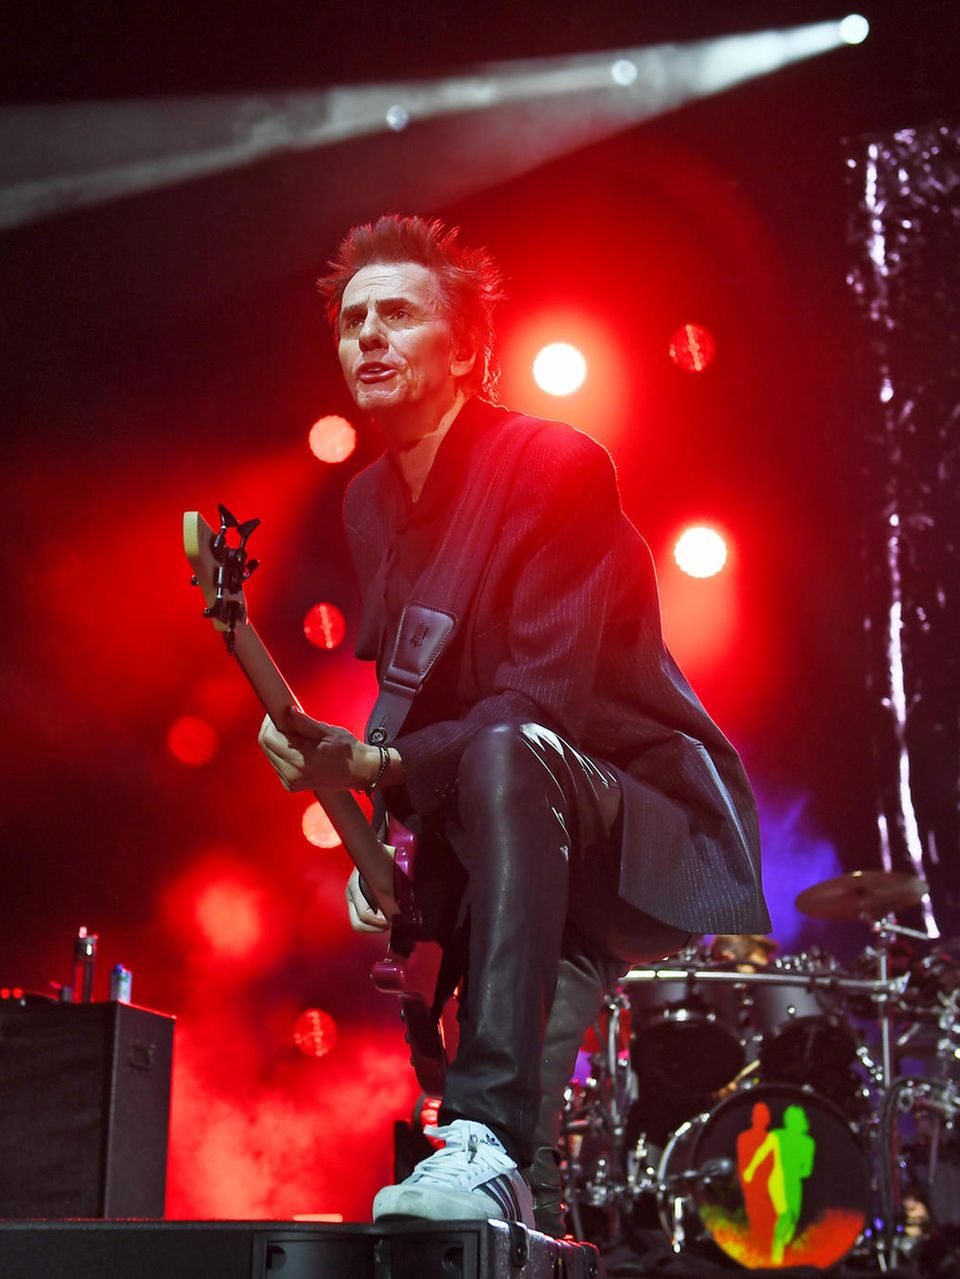 Der Bassist von Duran Duran bei einem Auftritt auf der Bühne